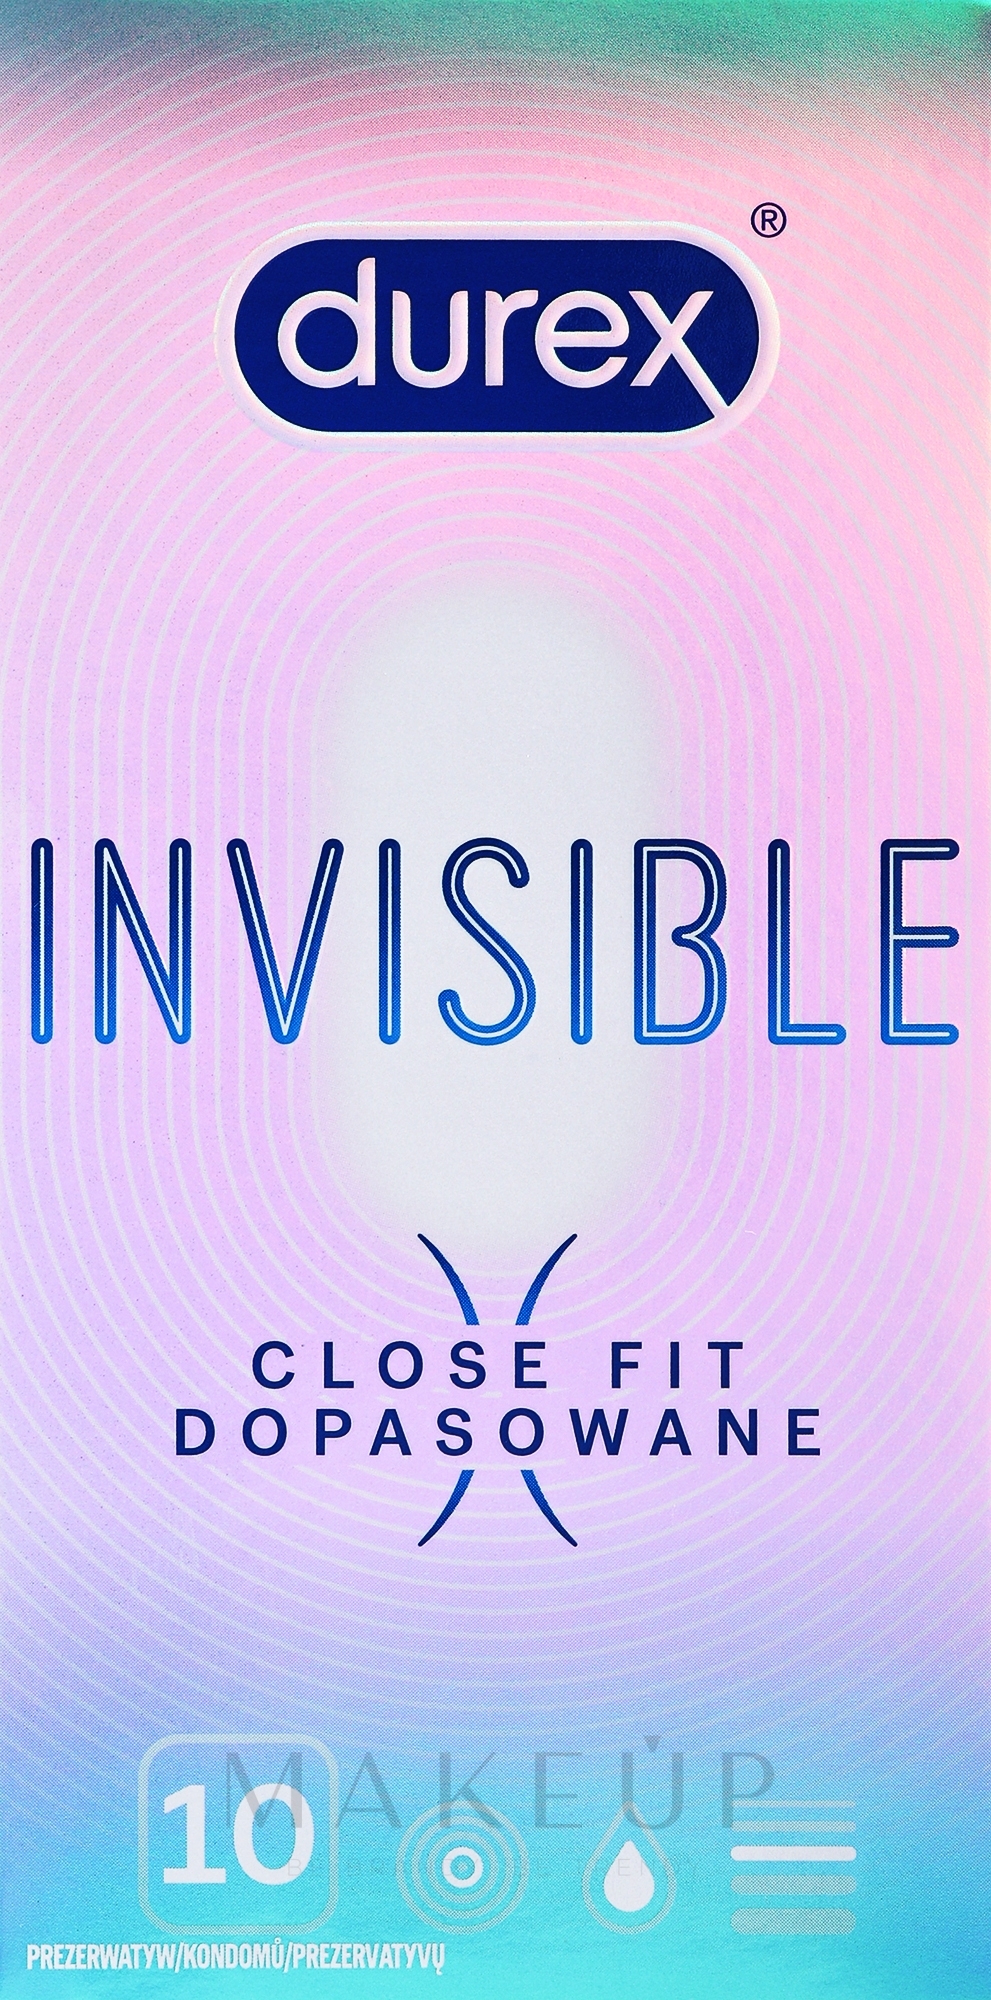 Kondome 10 St. - Durex Invisible Close Fit — Bild 10 St.